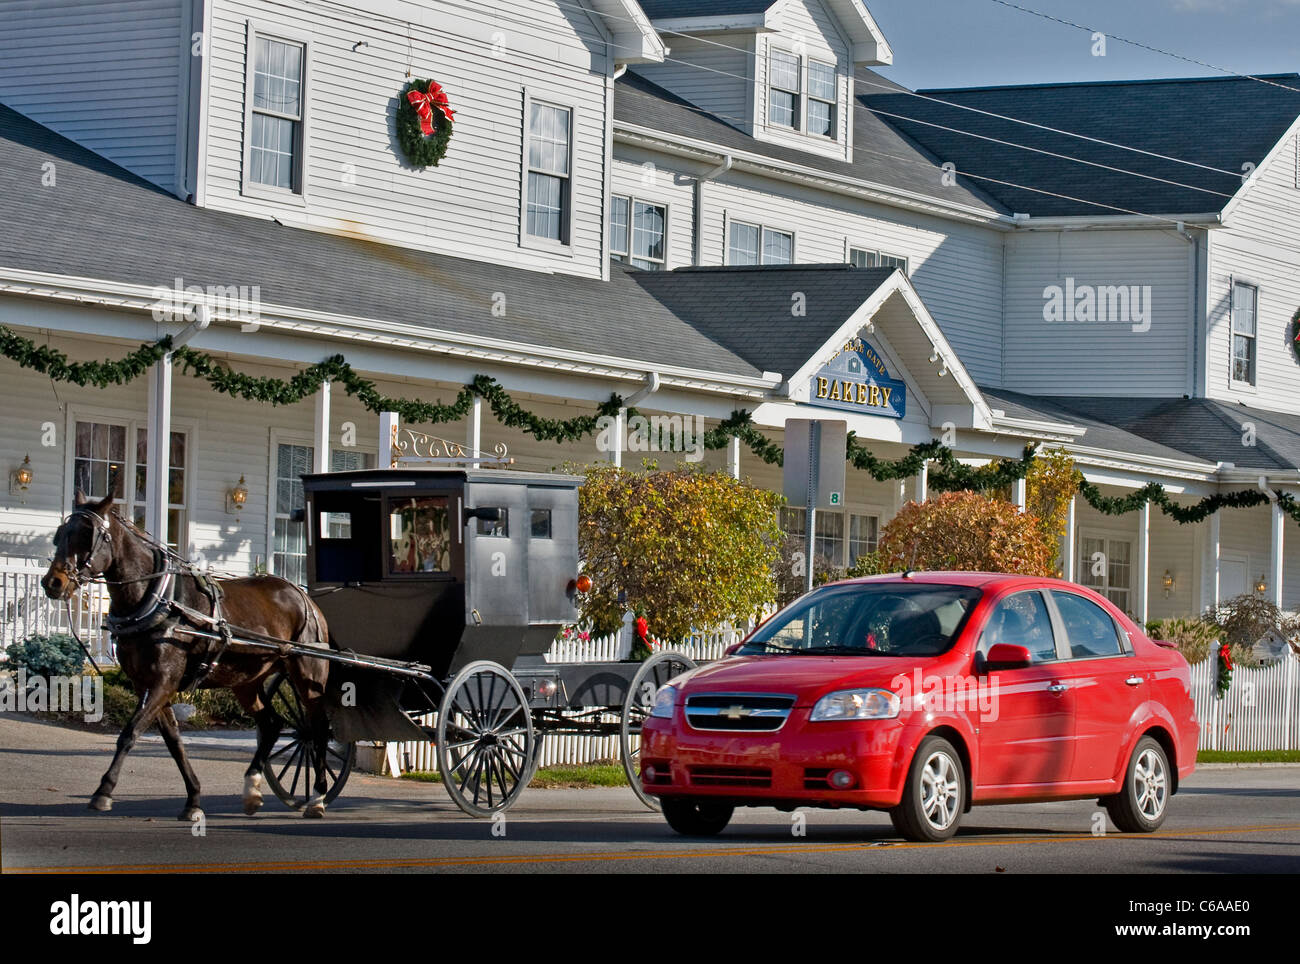 Location de buggy Amish et passant par le célèbre Blue Gate Restaurant and Bakery, populaire pour sa nourriture Amish, à Shipshewana, en Indiana. Banque D'Images